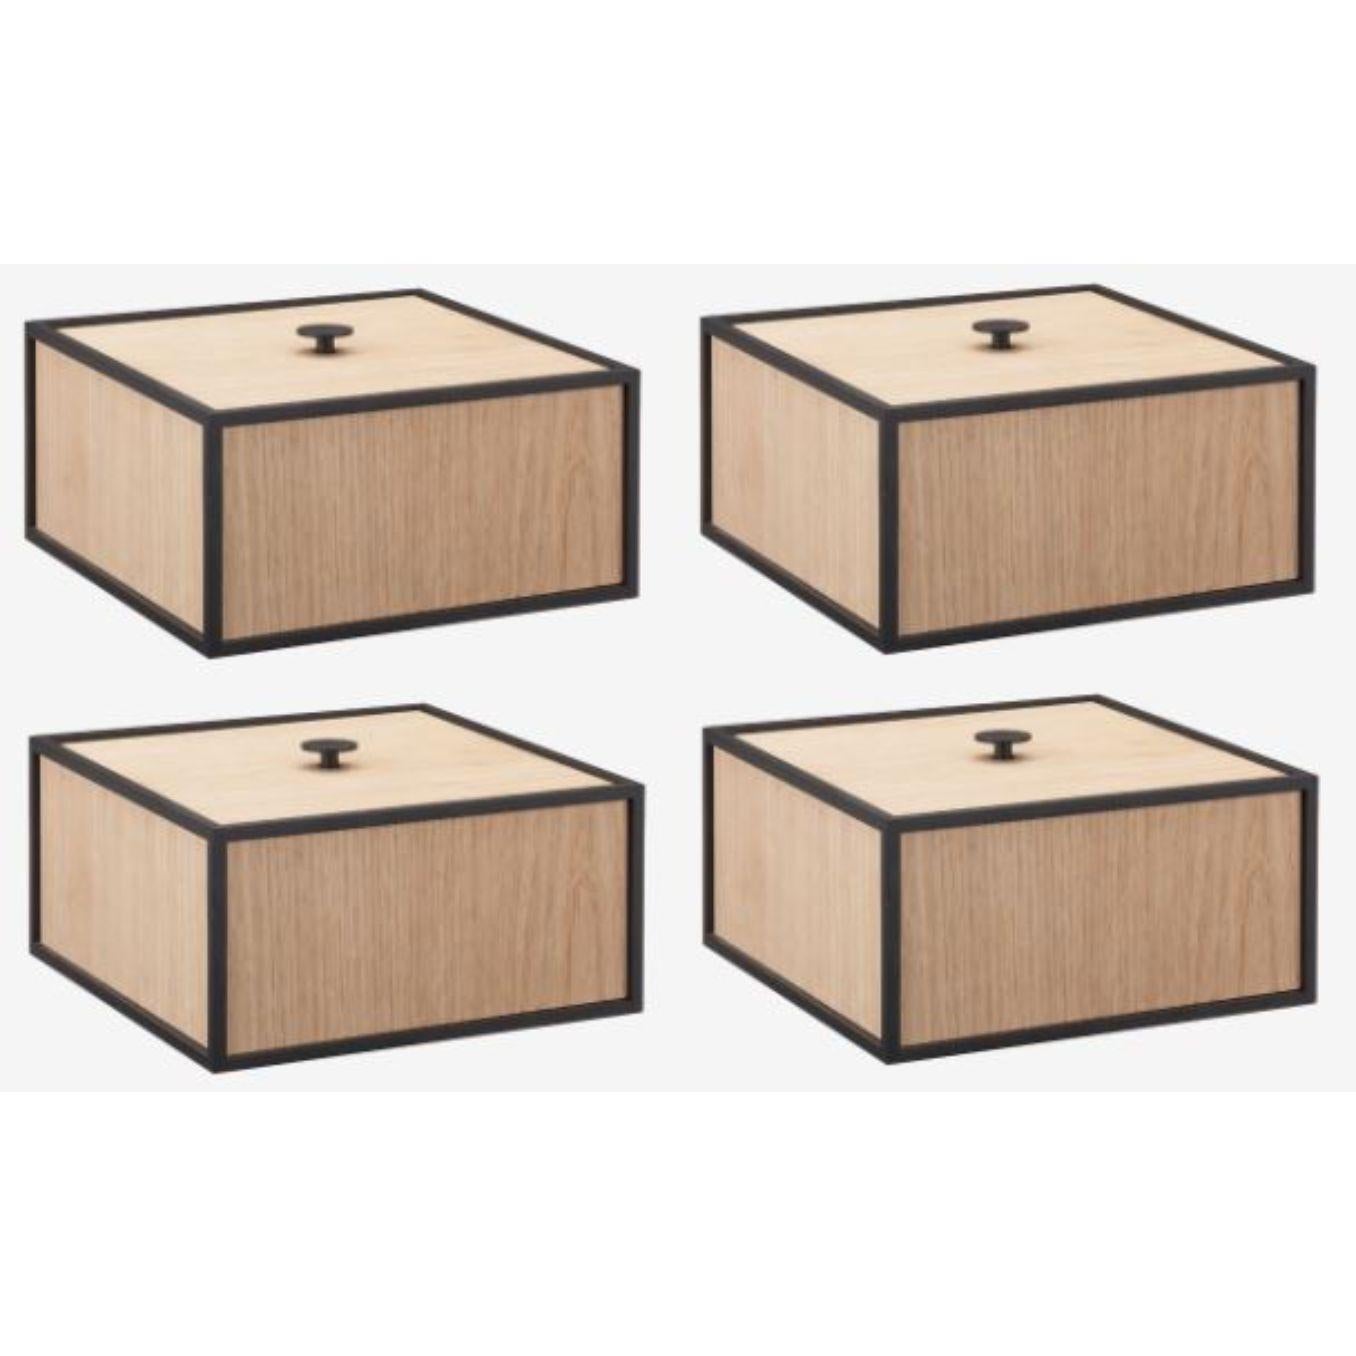 4er set eichenholzrahmen 20 box by Lassen
Abmessungen: D 20 x B 20 x H 10 cm 
MATERIALIEN: Melamin, Melamin, Metall, Furnier
Gewicht: 2.00 kg

Frame Box ist eine quadratische Box in kubistischer Form. Die schlichten Kästen sind von den